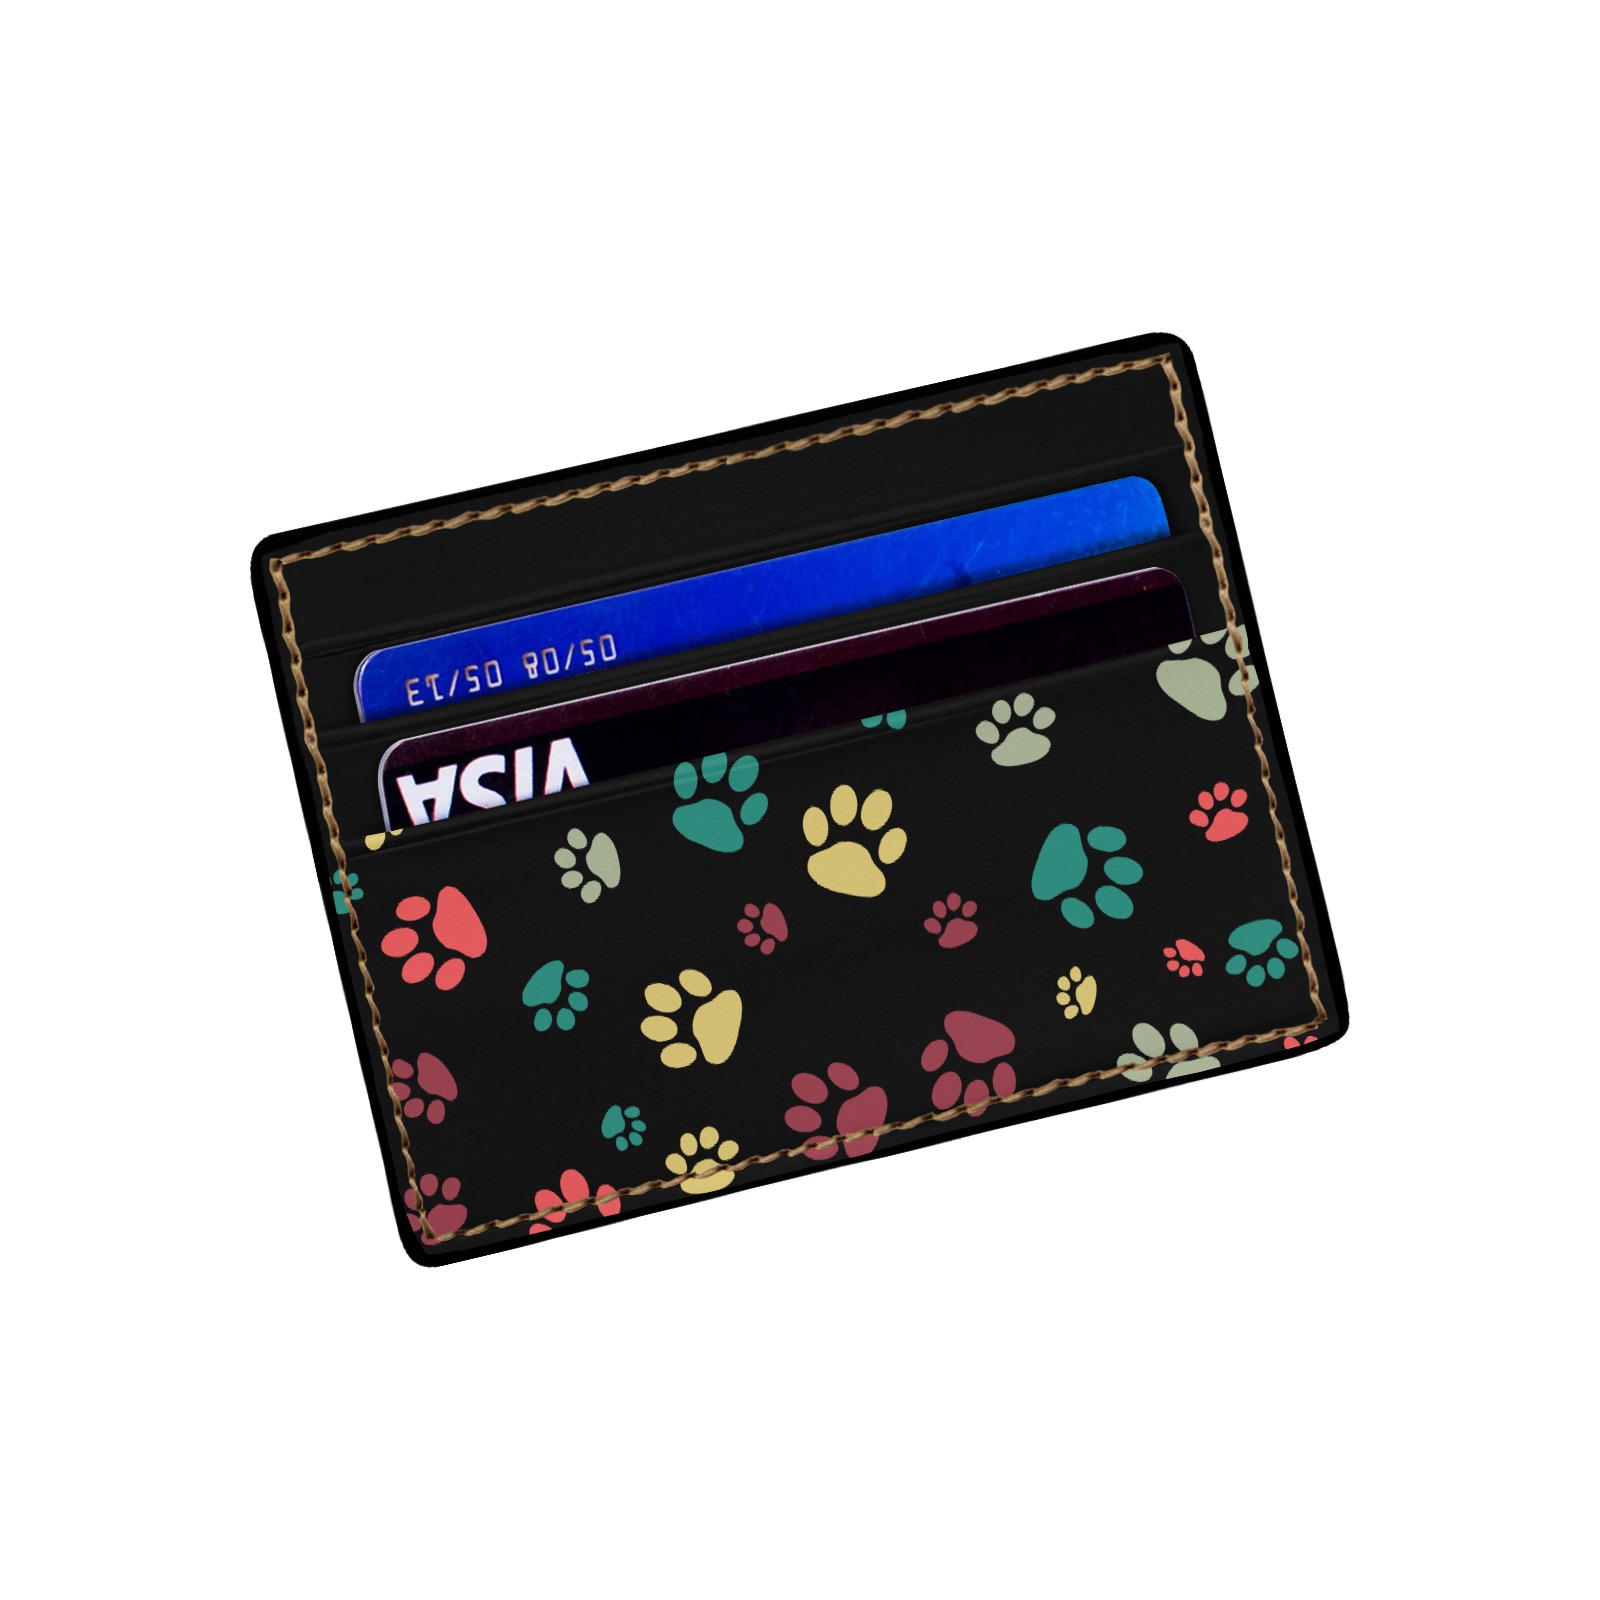 Dog paw print wallet - Black Card Holder